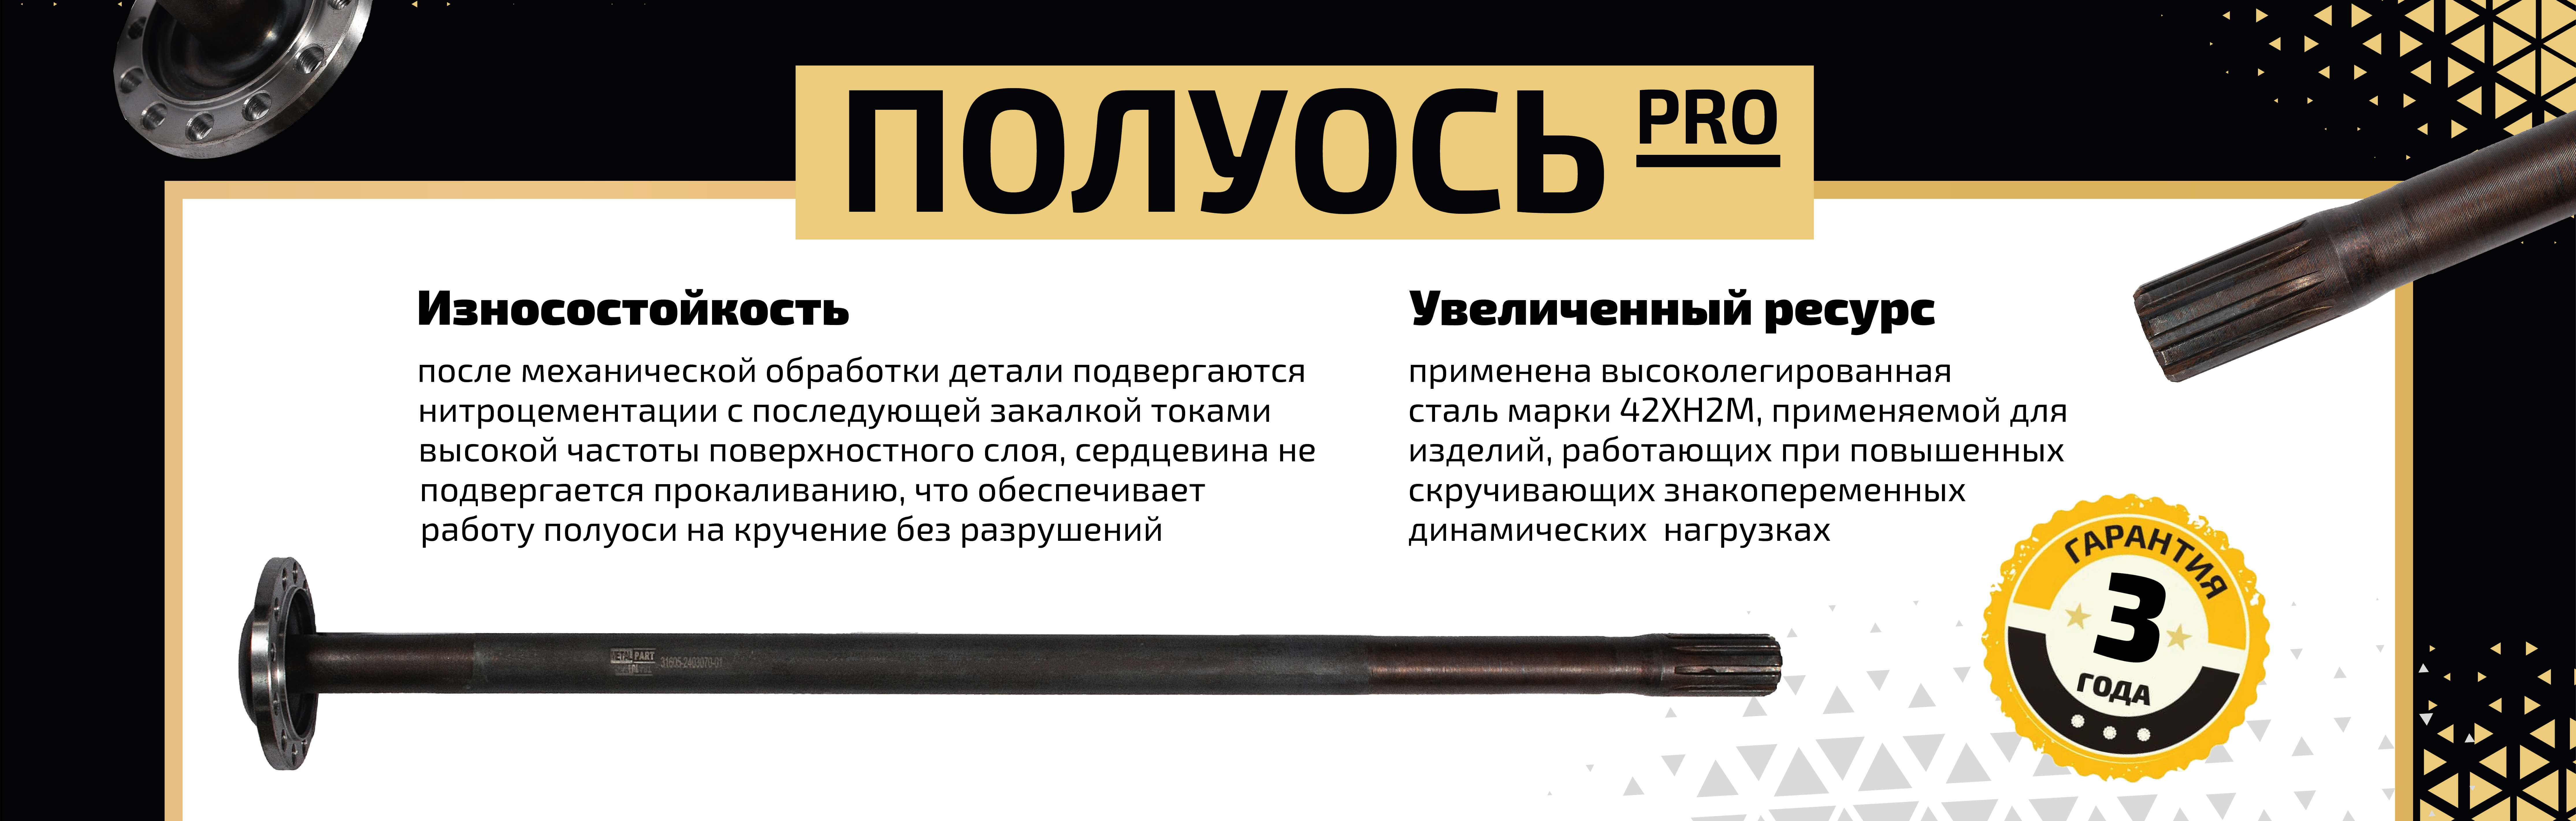 Полуоси для ГАЗ и УАЗ ⚙ — купить в Санкт-Петербурге, цены в Metalpart.ru